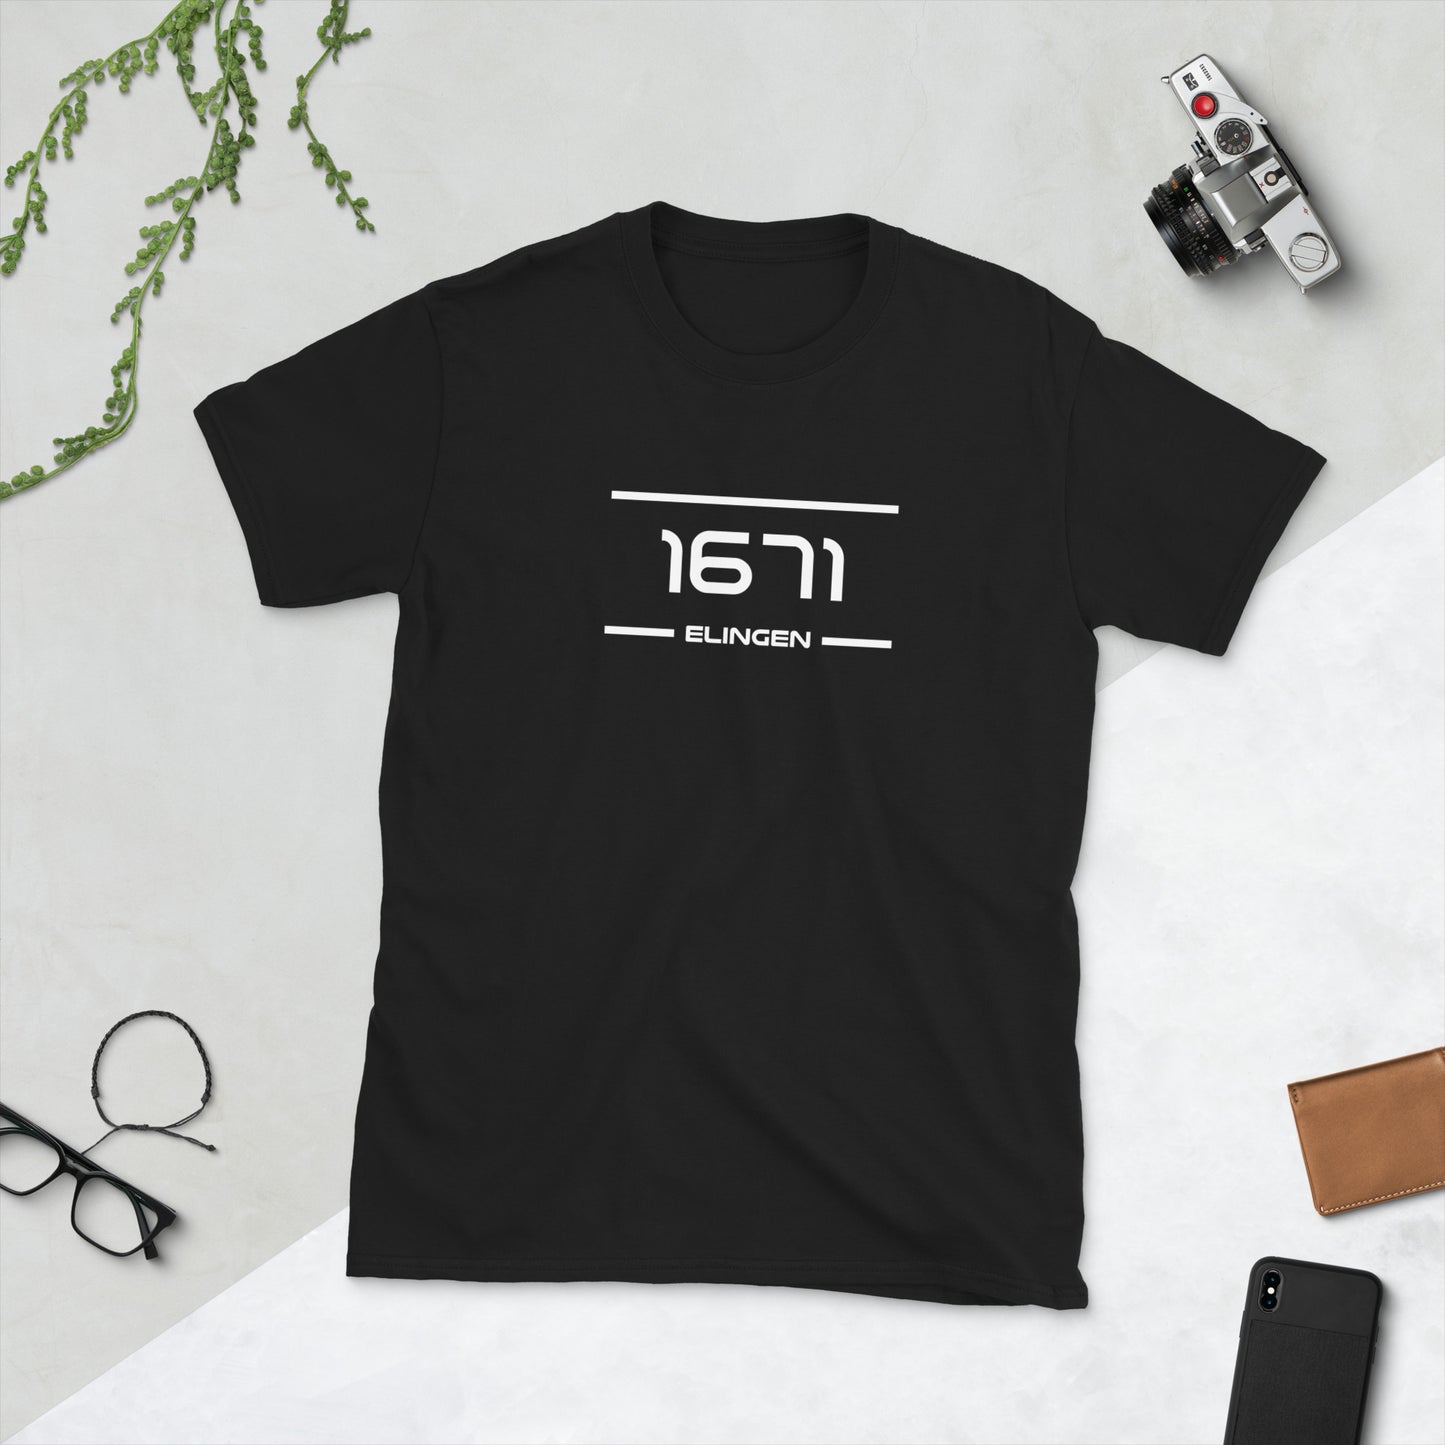 Tshirt - 1671 - Elingen